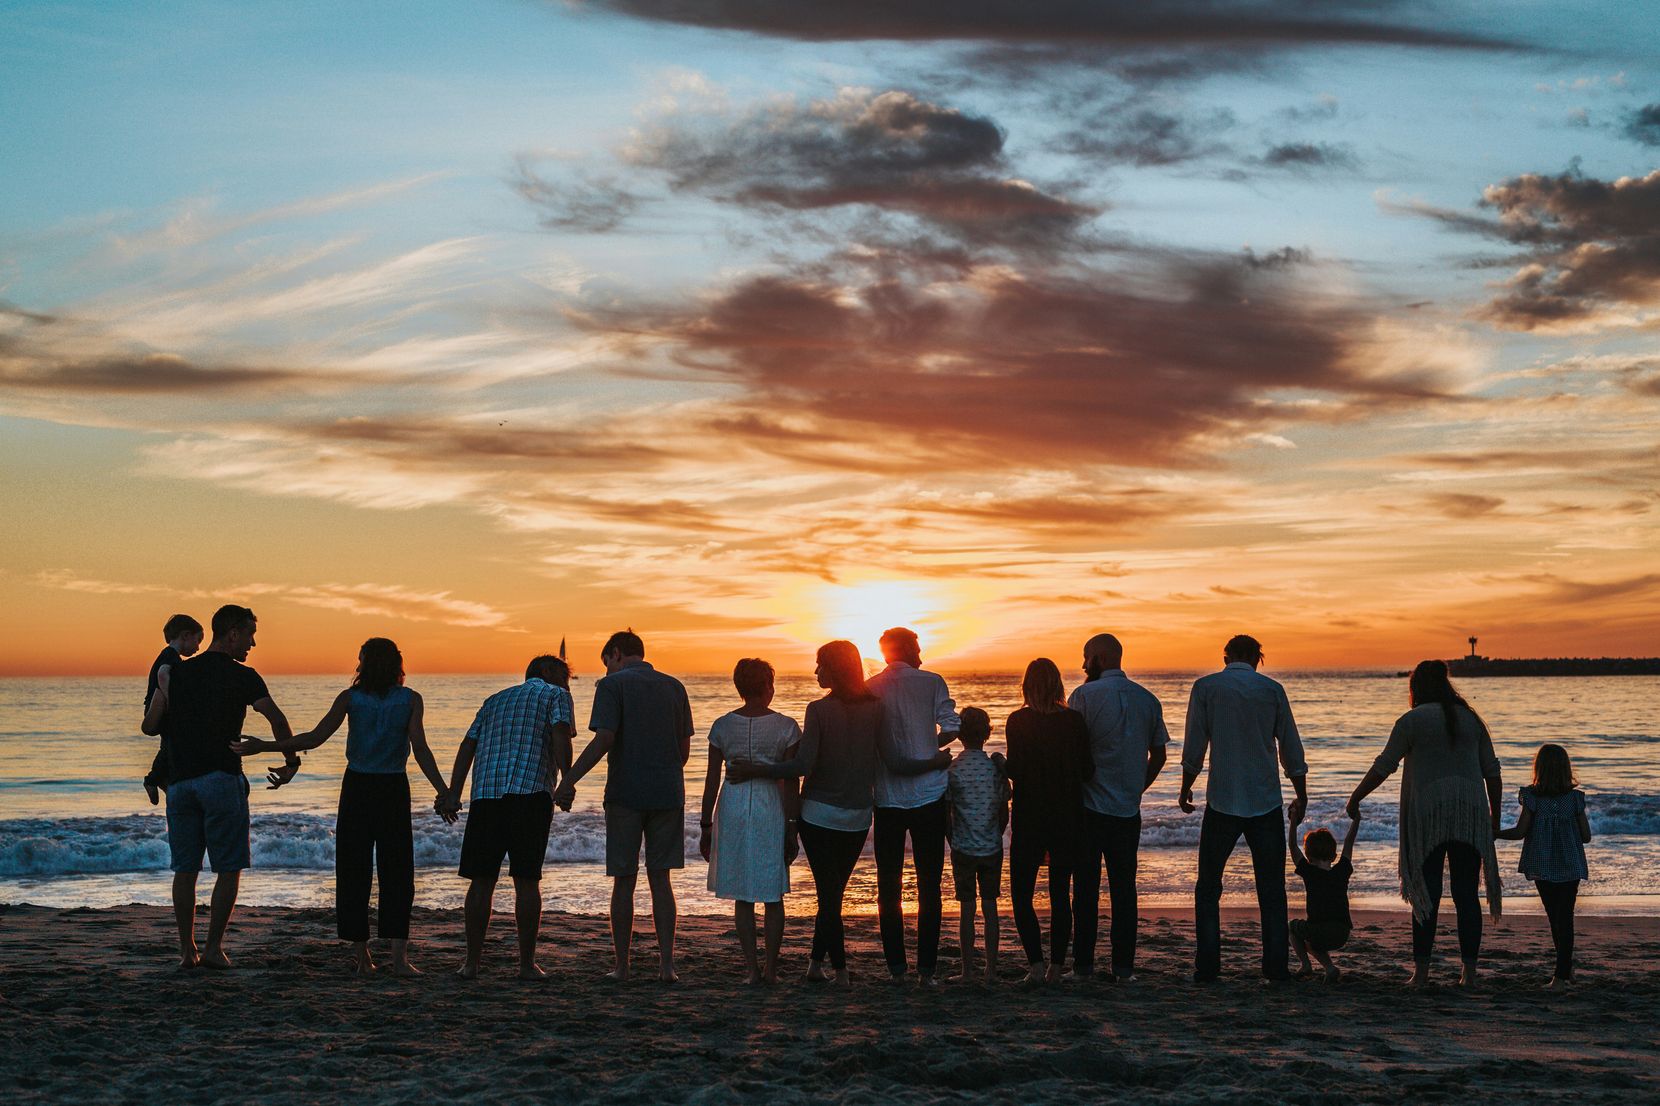 Auf dem Bild sieht man eine Gruppe von Menschen, die zusammen in einer Reihe stehen und den Sonnenuntergang am Meer geniessen.